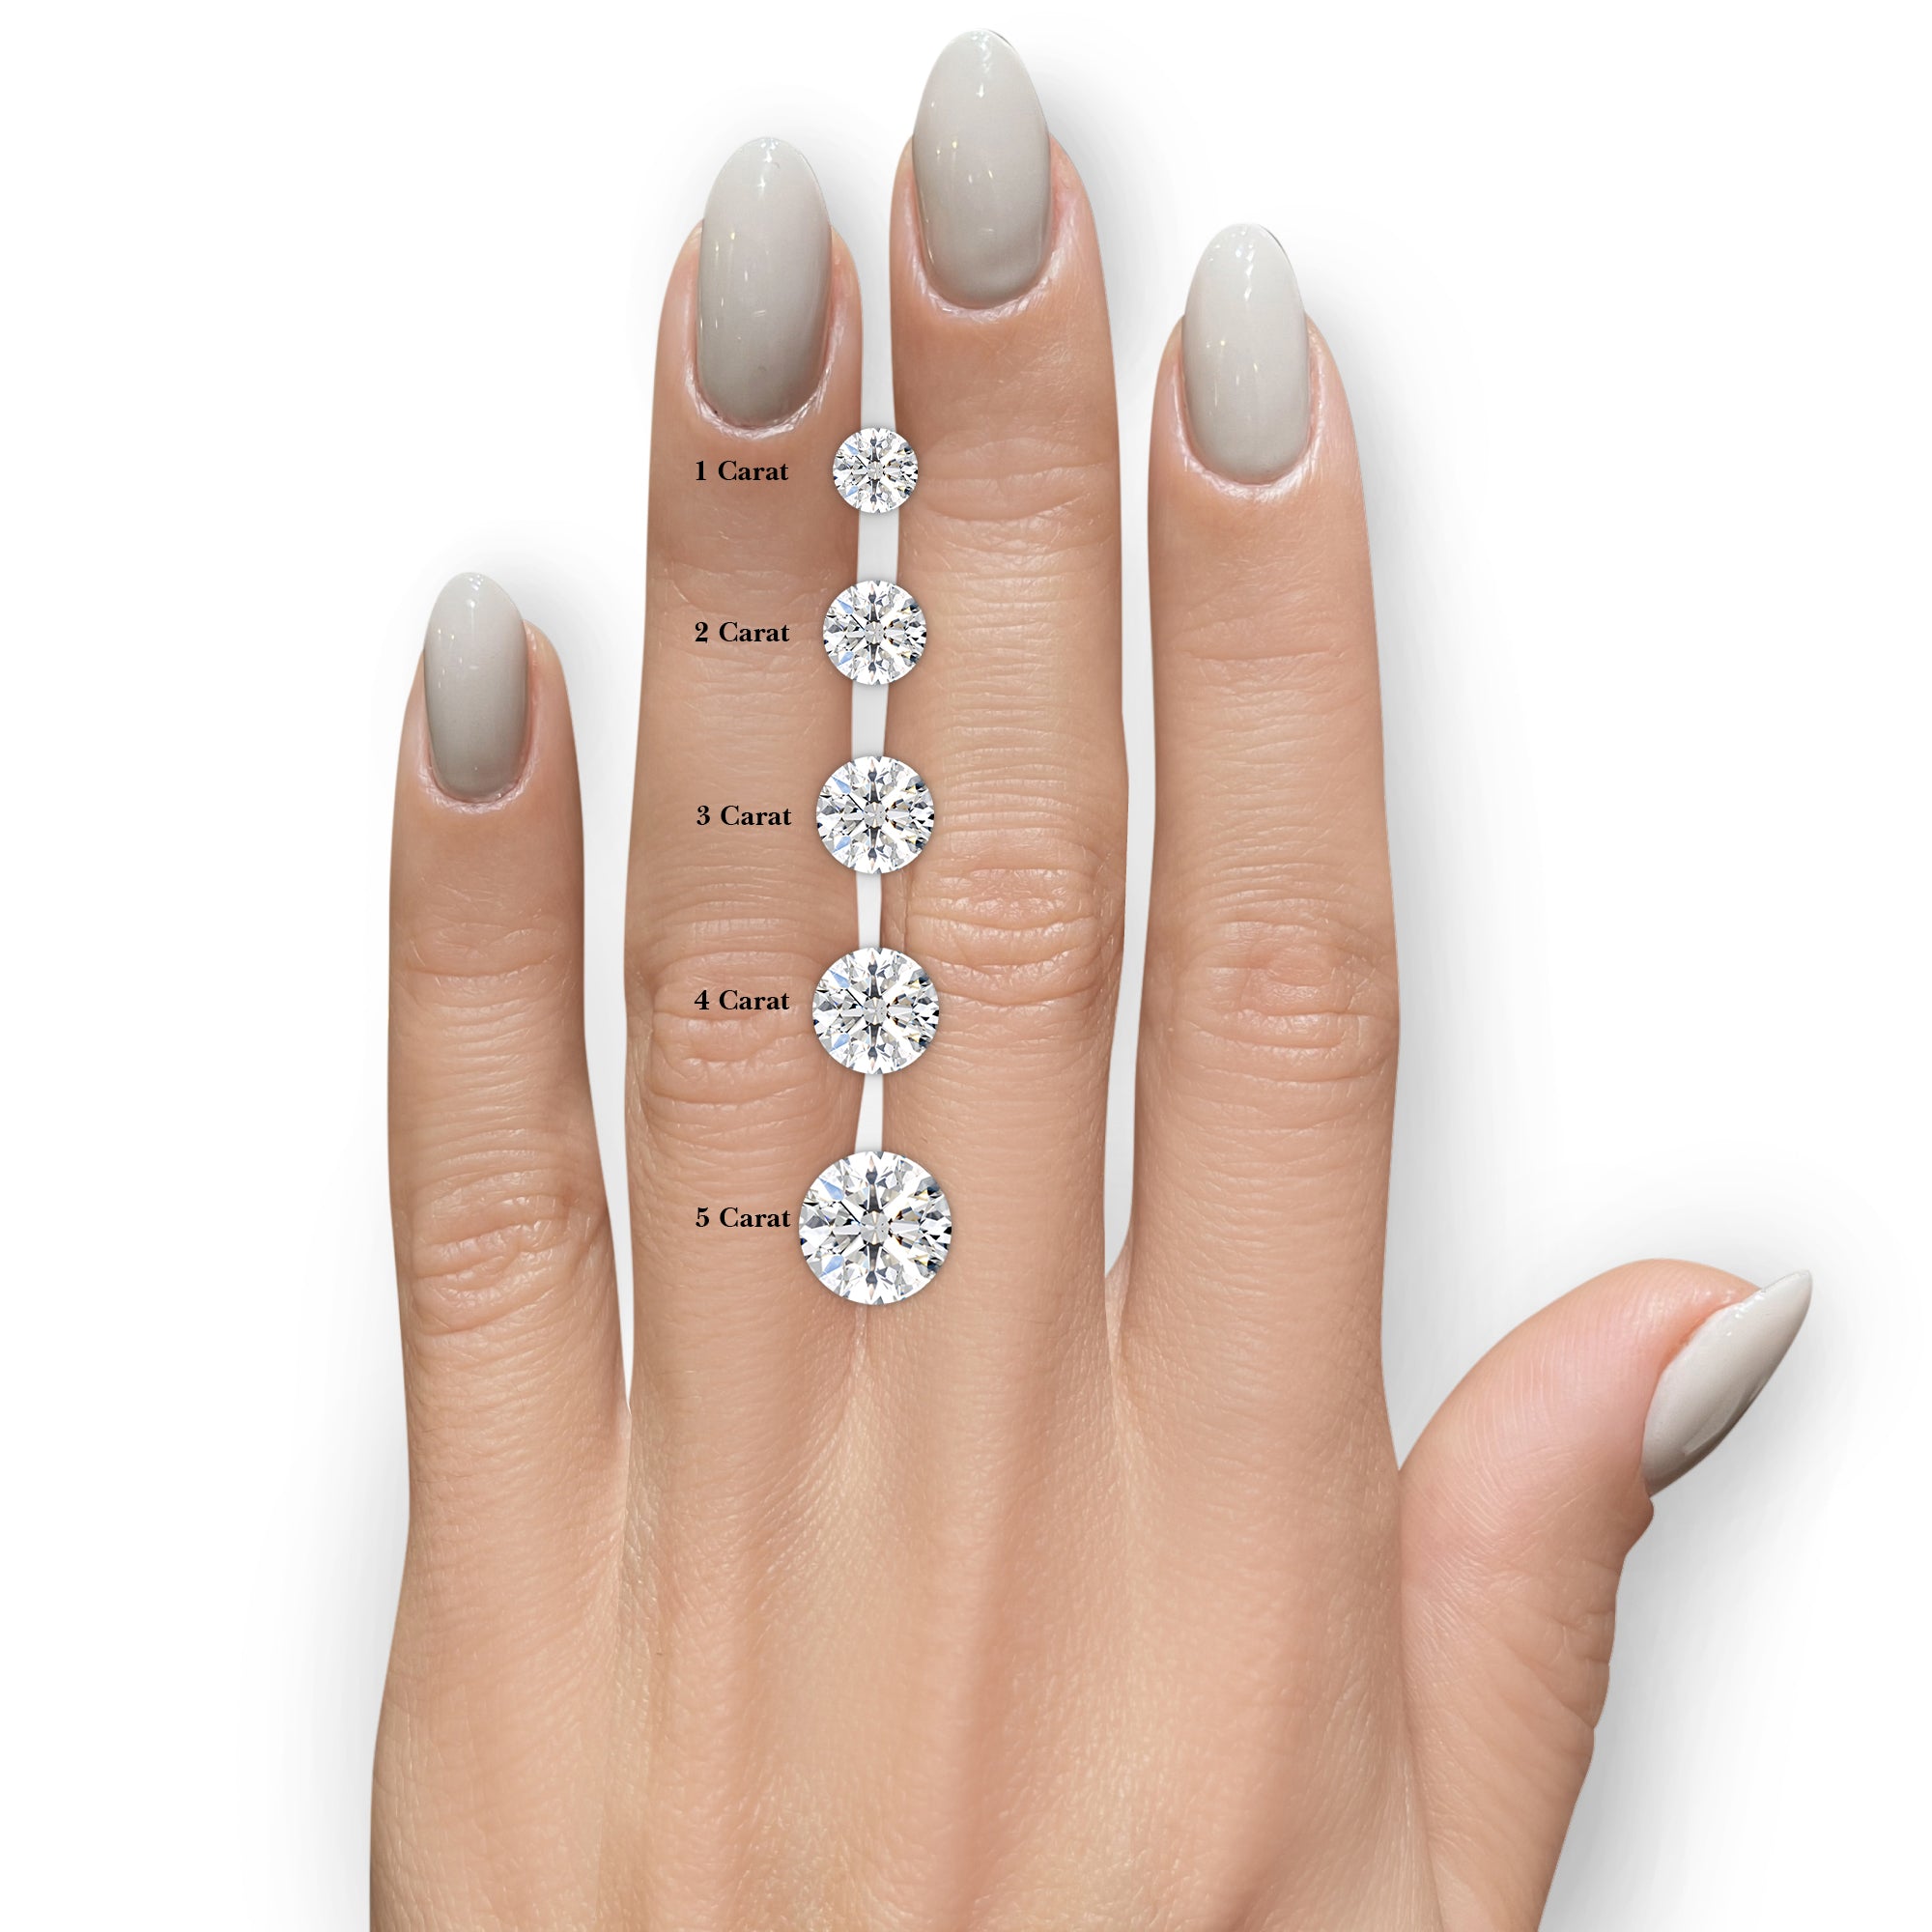 Charlie Diamond Engagement Ring -18K White Gold